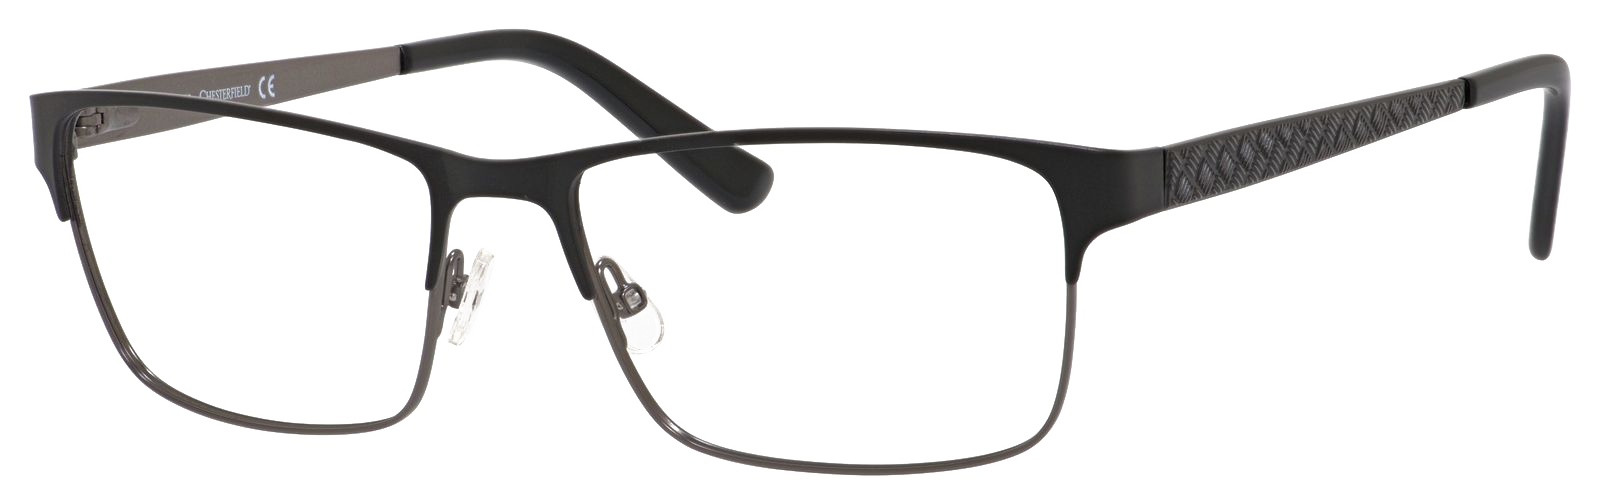 Rectangular Eyeglasses Free PNG Image